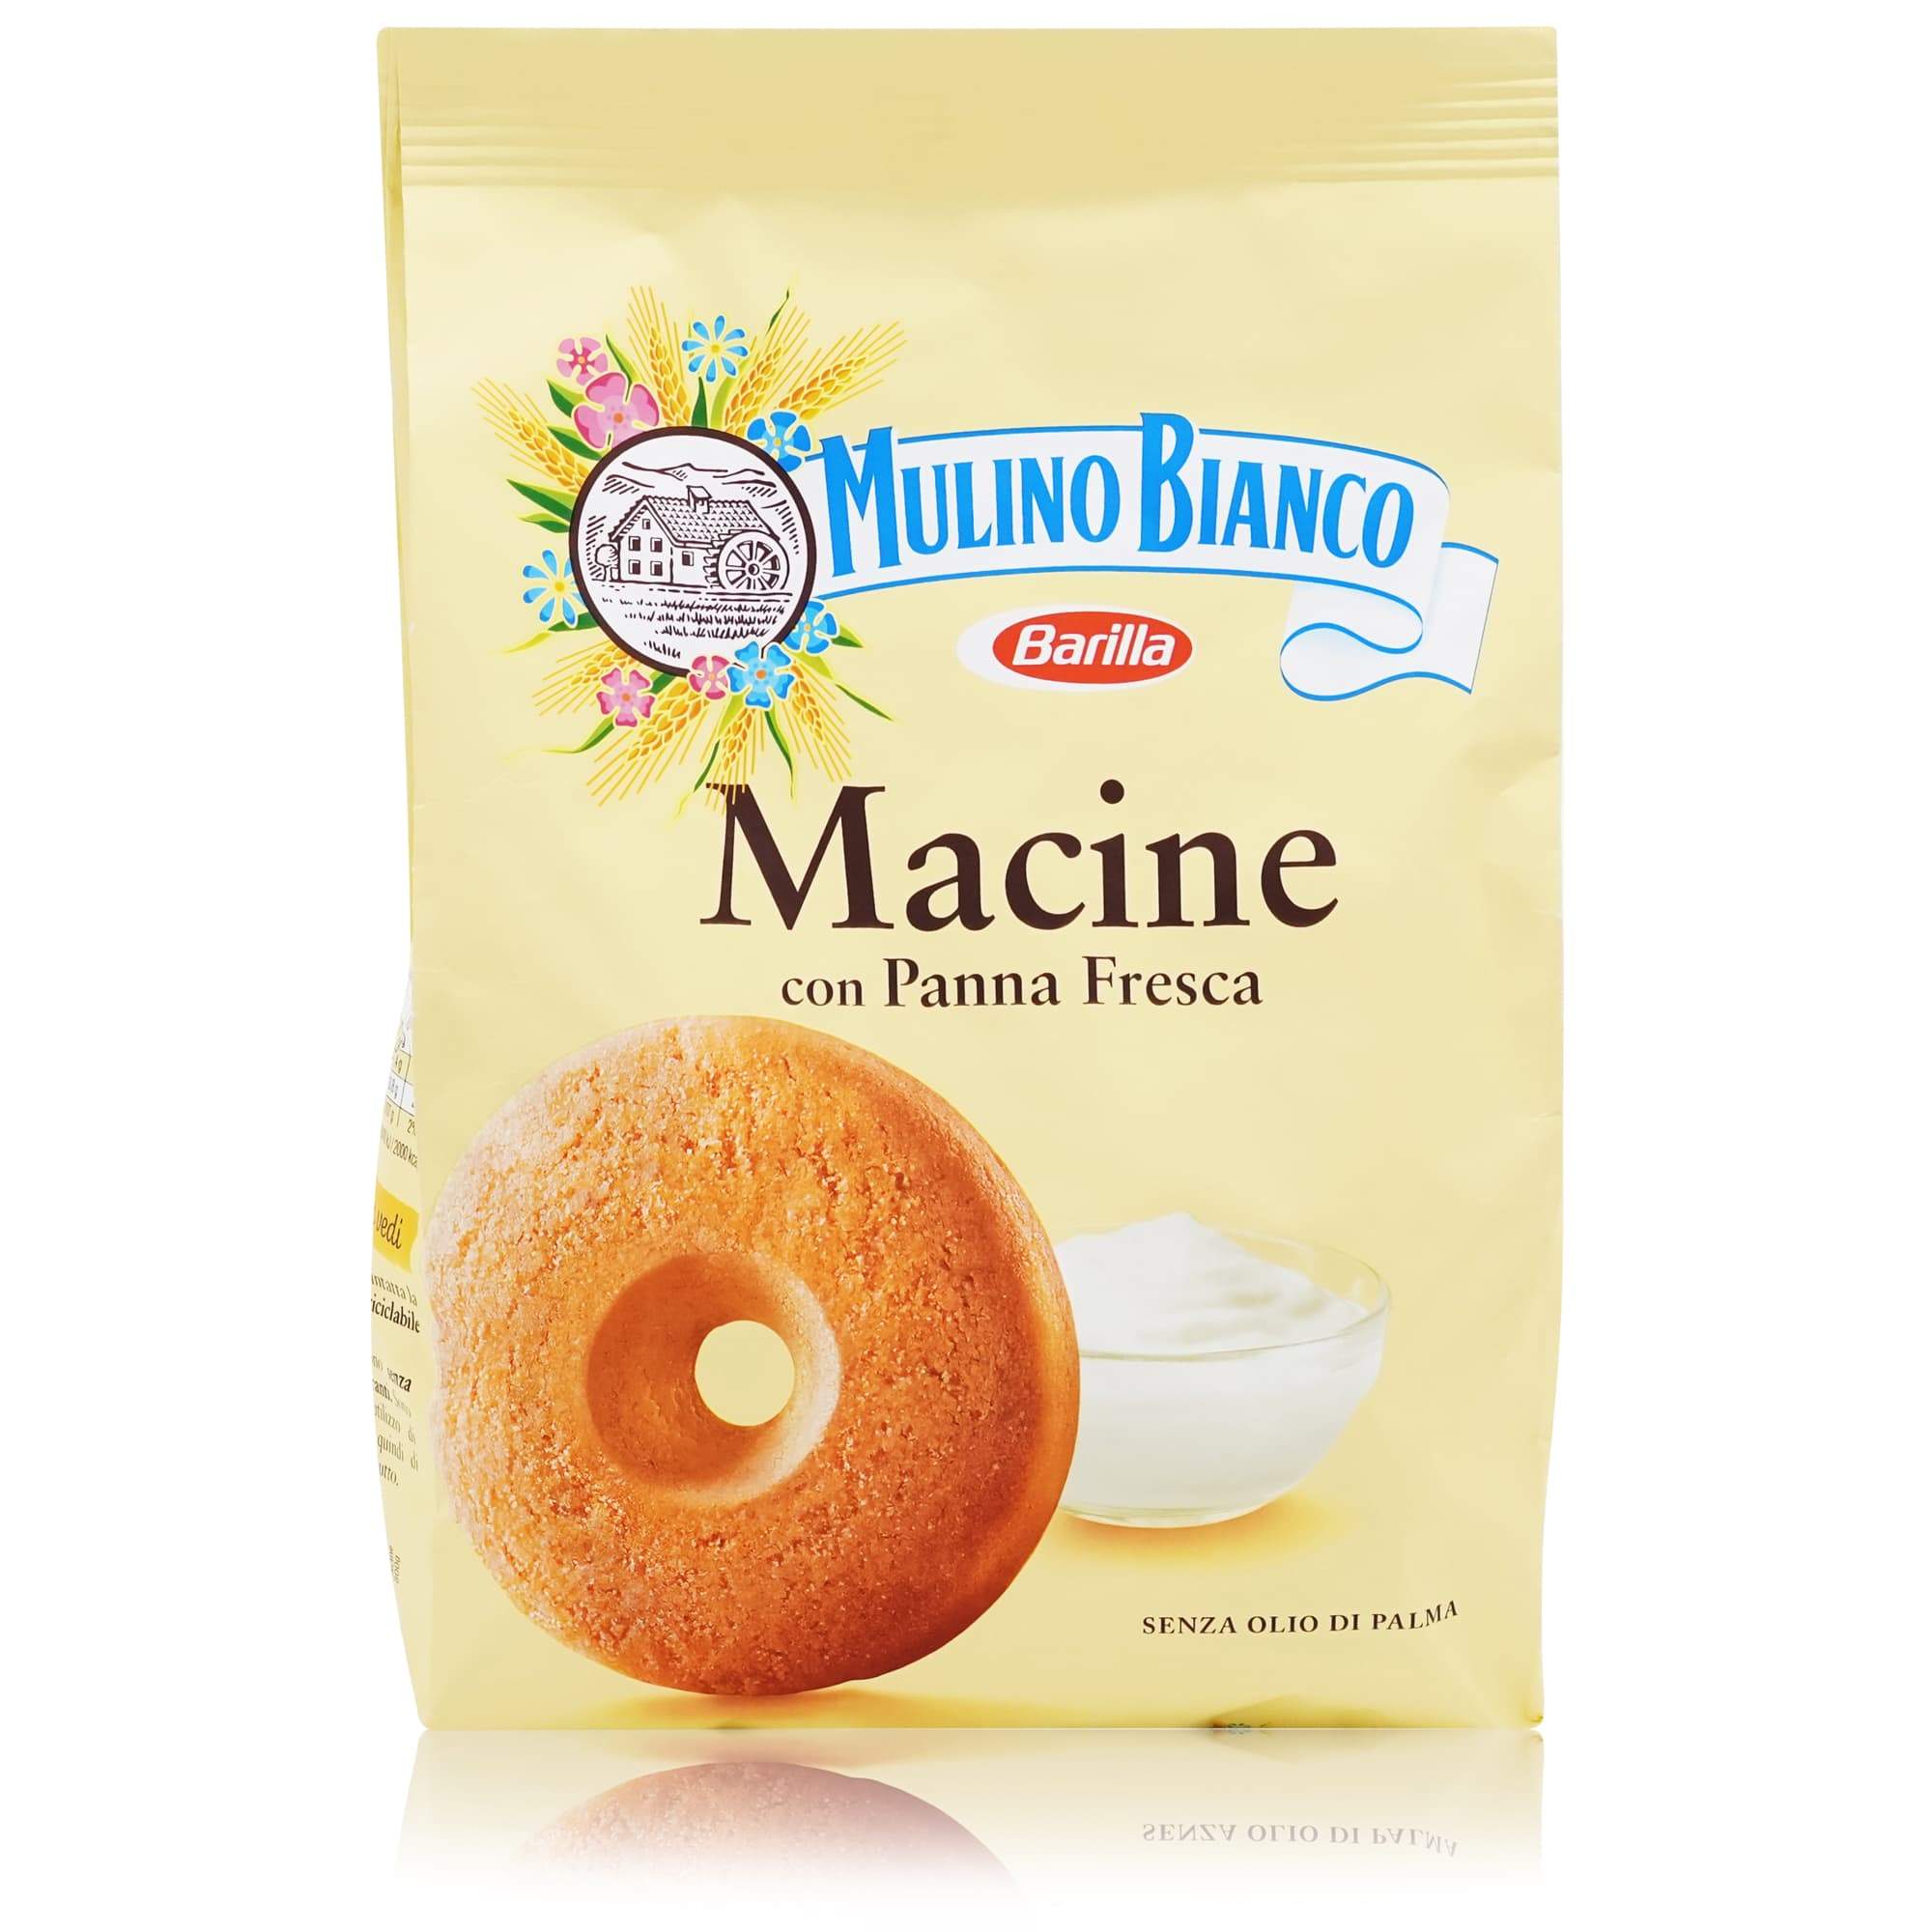 MULINO BIANCO Macine Kekse - 0,8kg - italienisch-einkaufen.de